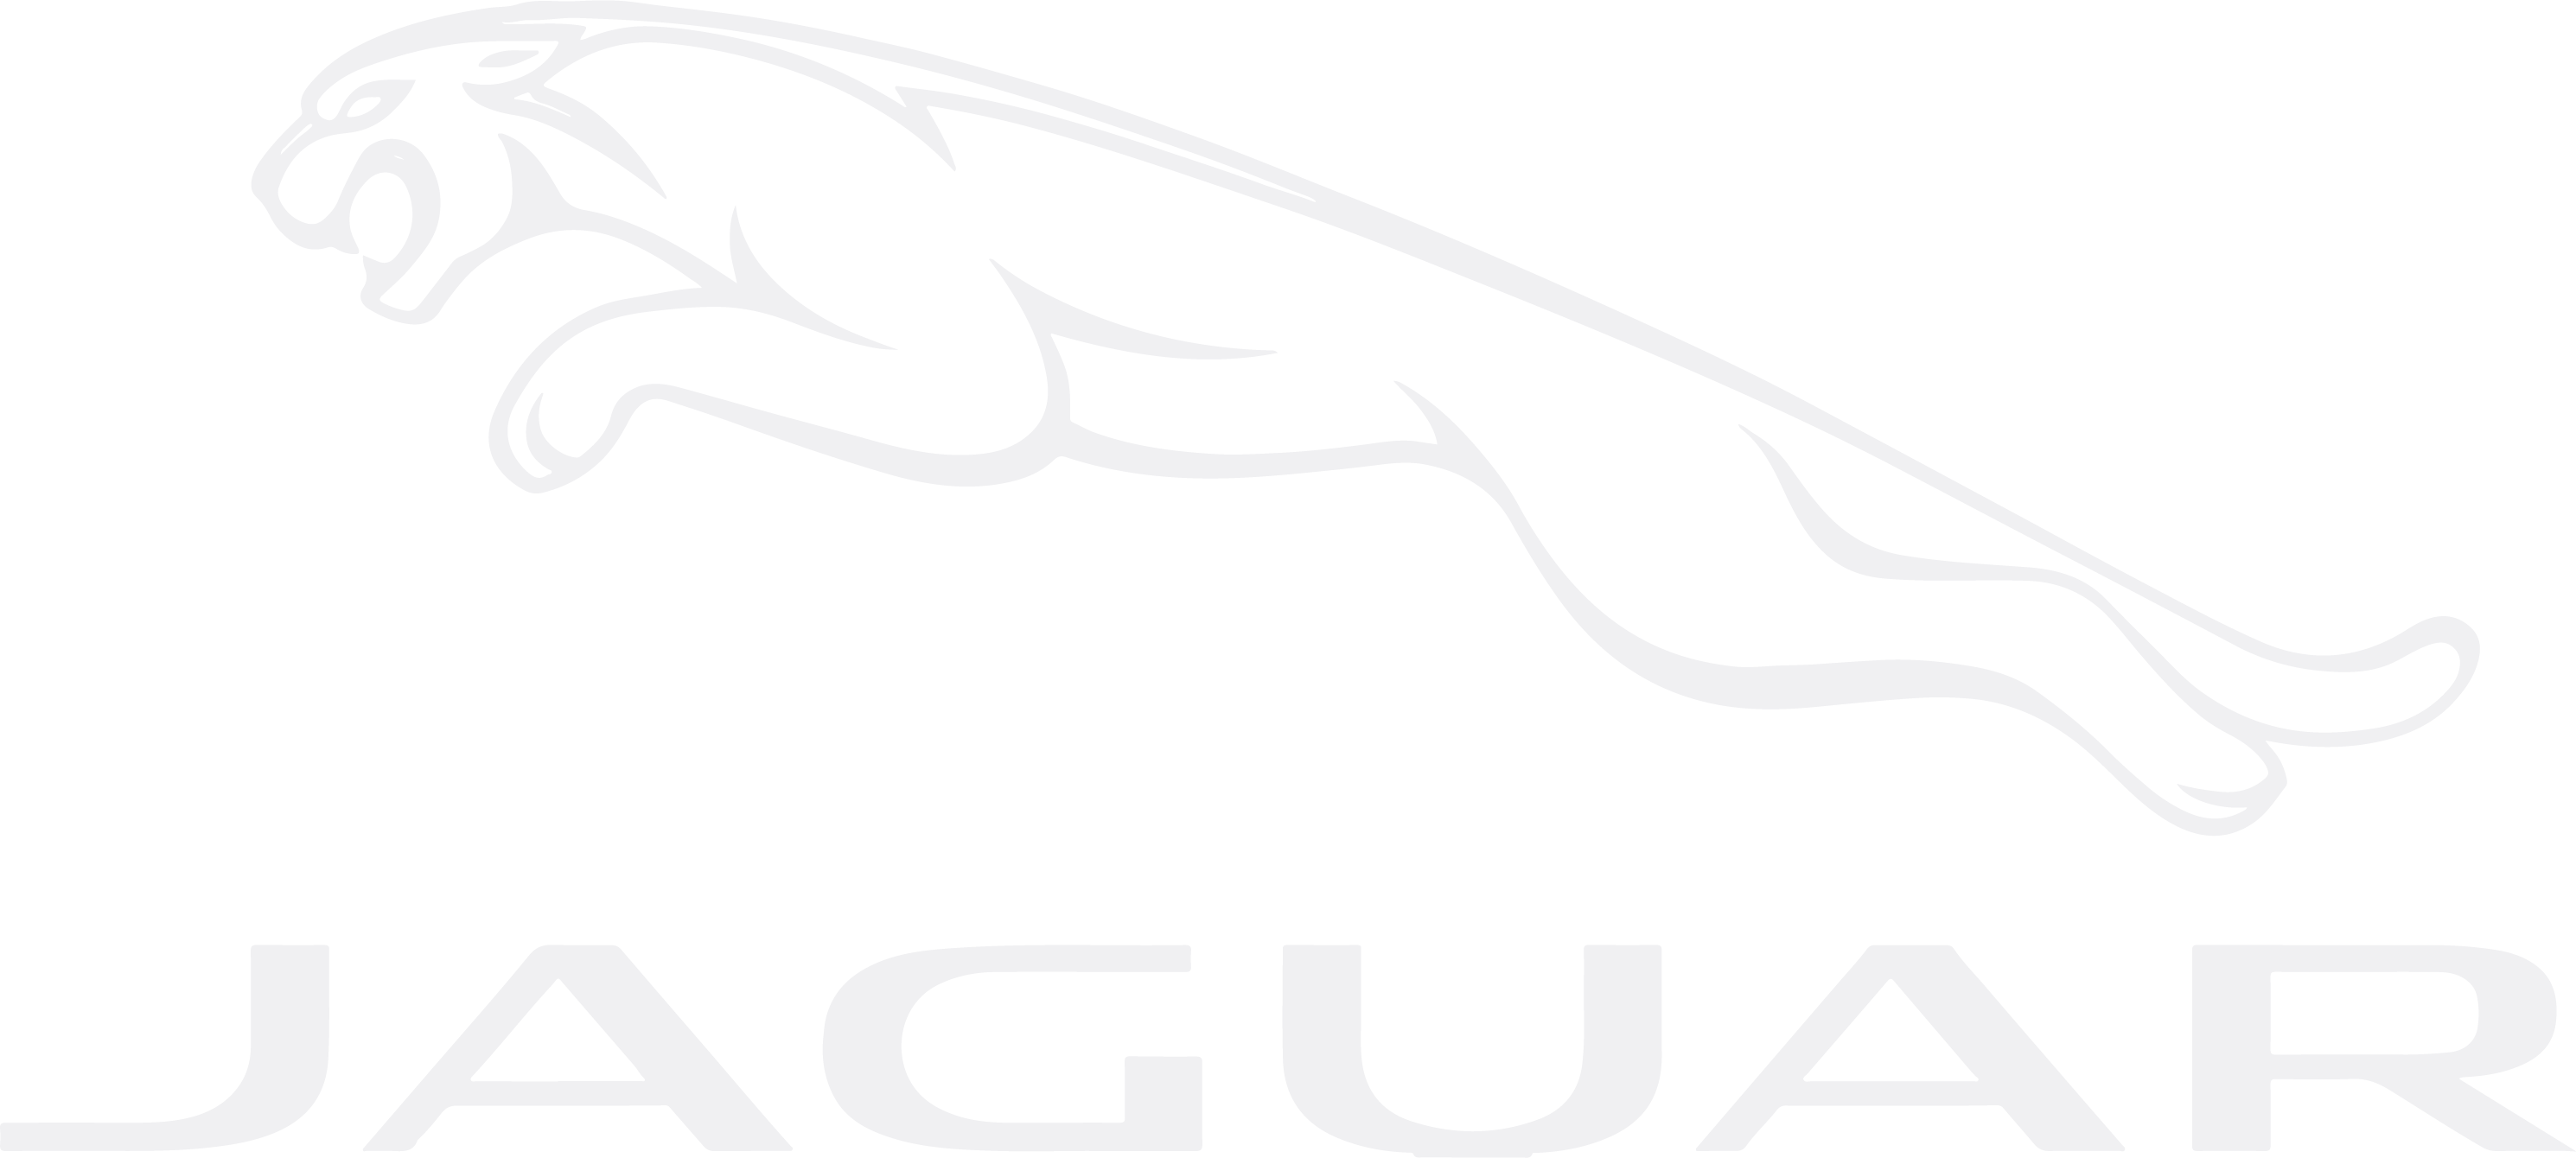 JAGUAR logo